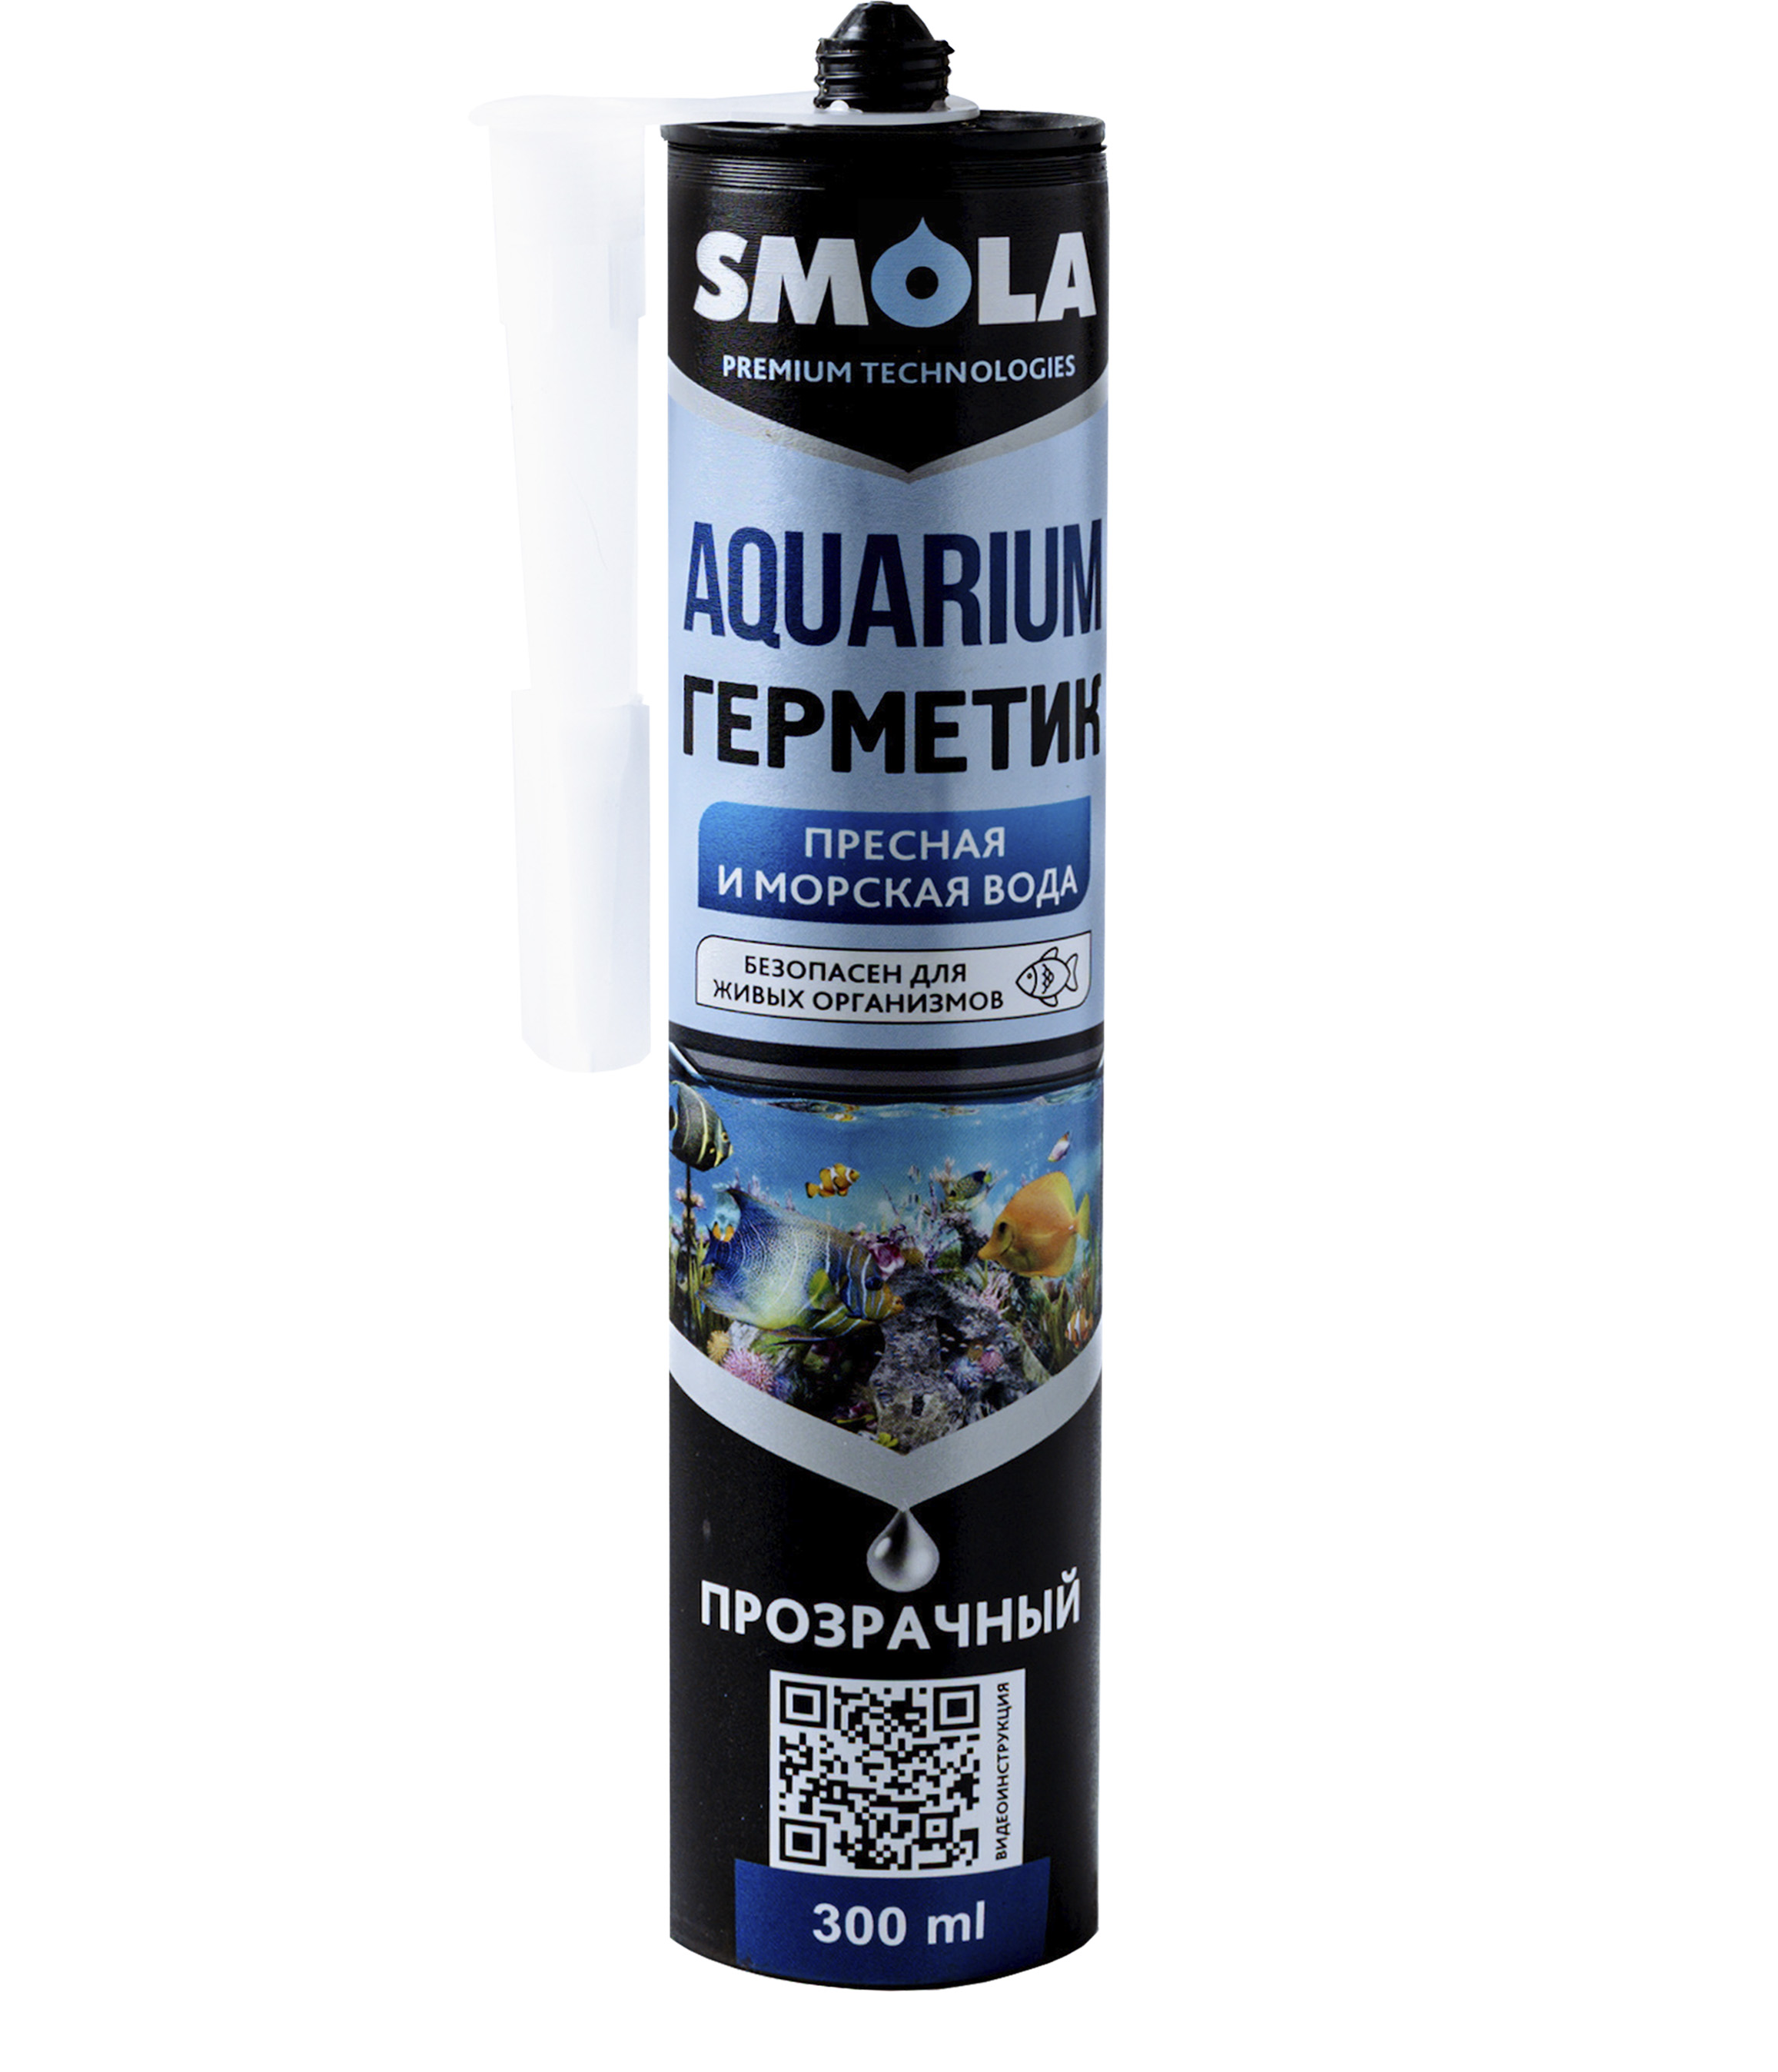 Герметик Smola Aquarium аквариумный, прозрачный, 300 мл jbl digital aquarium thermometer цифровой аквариумный термометр 13 см